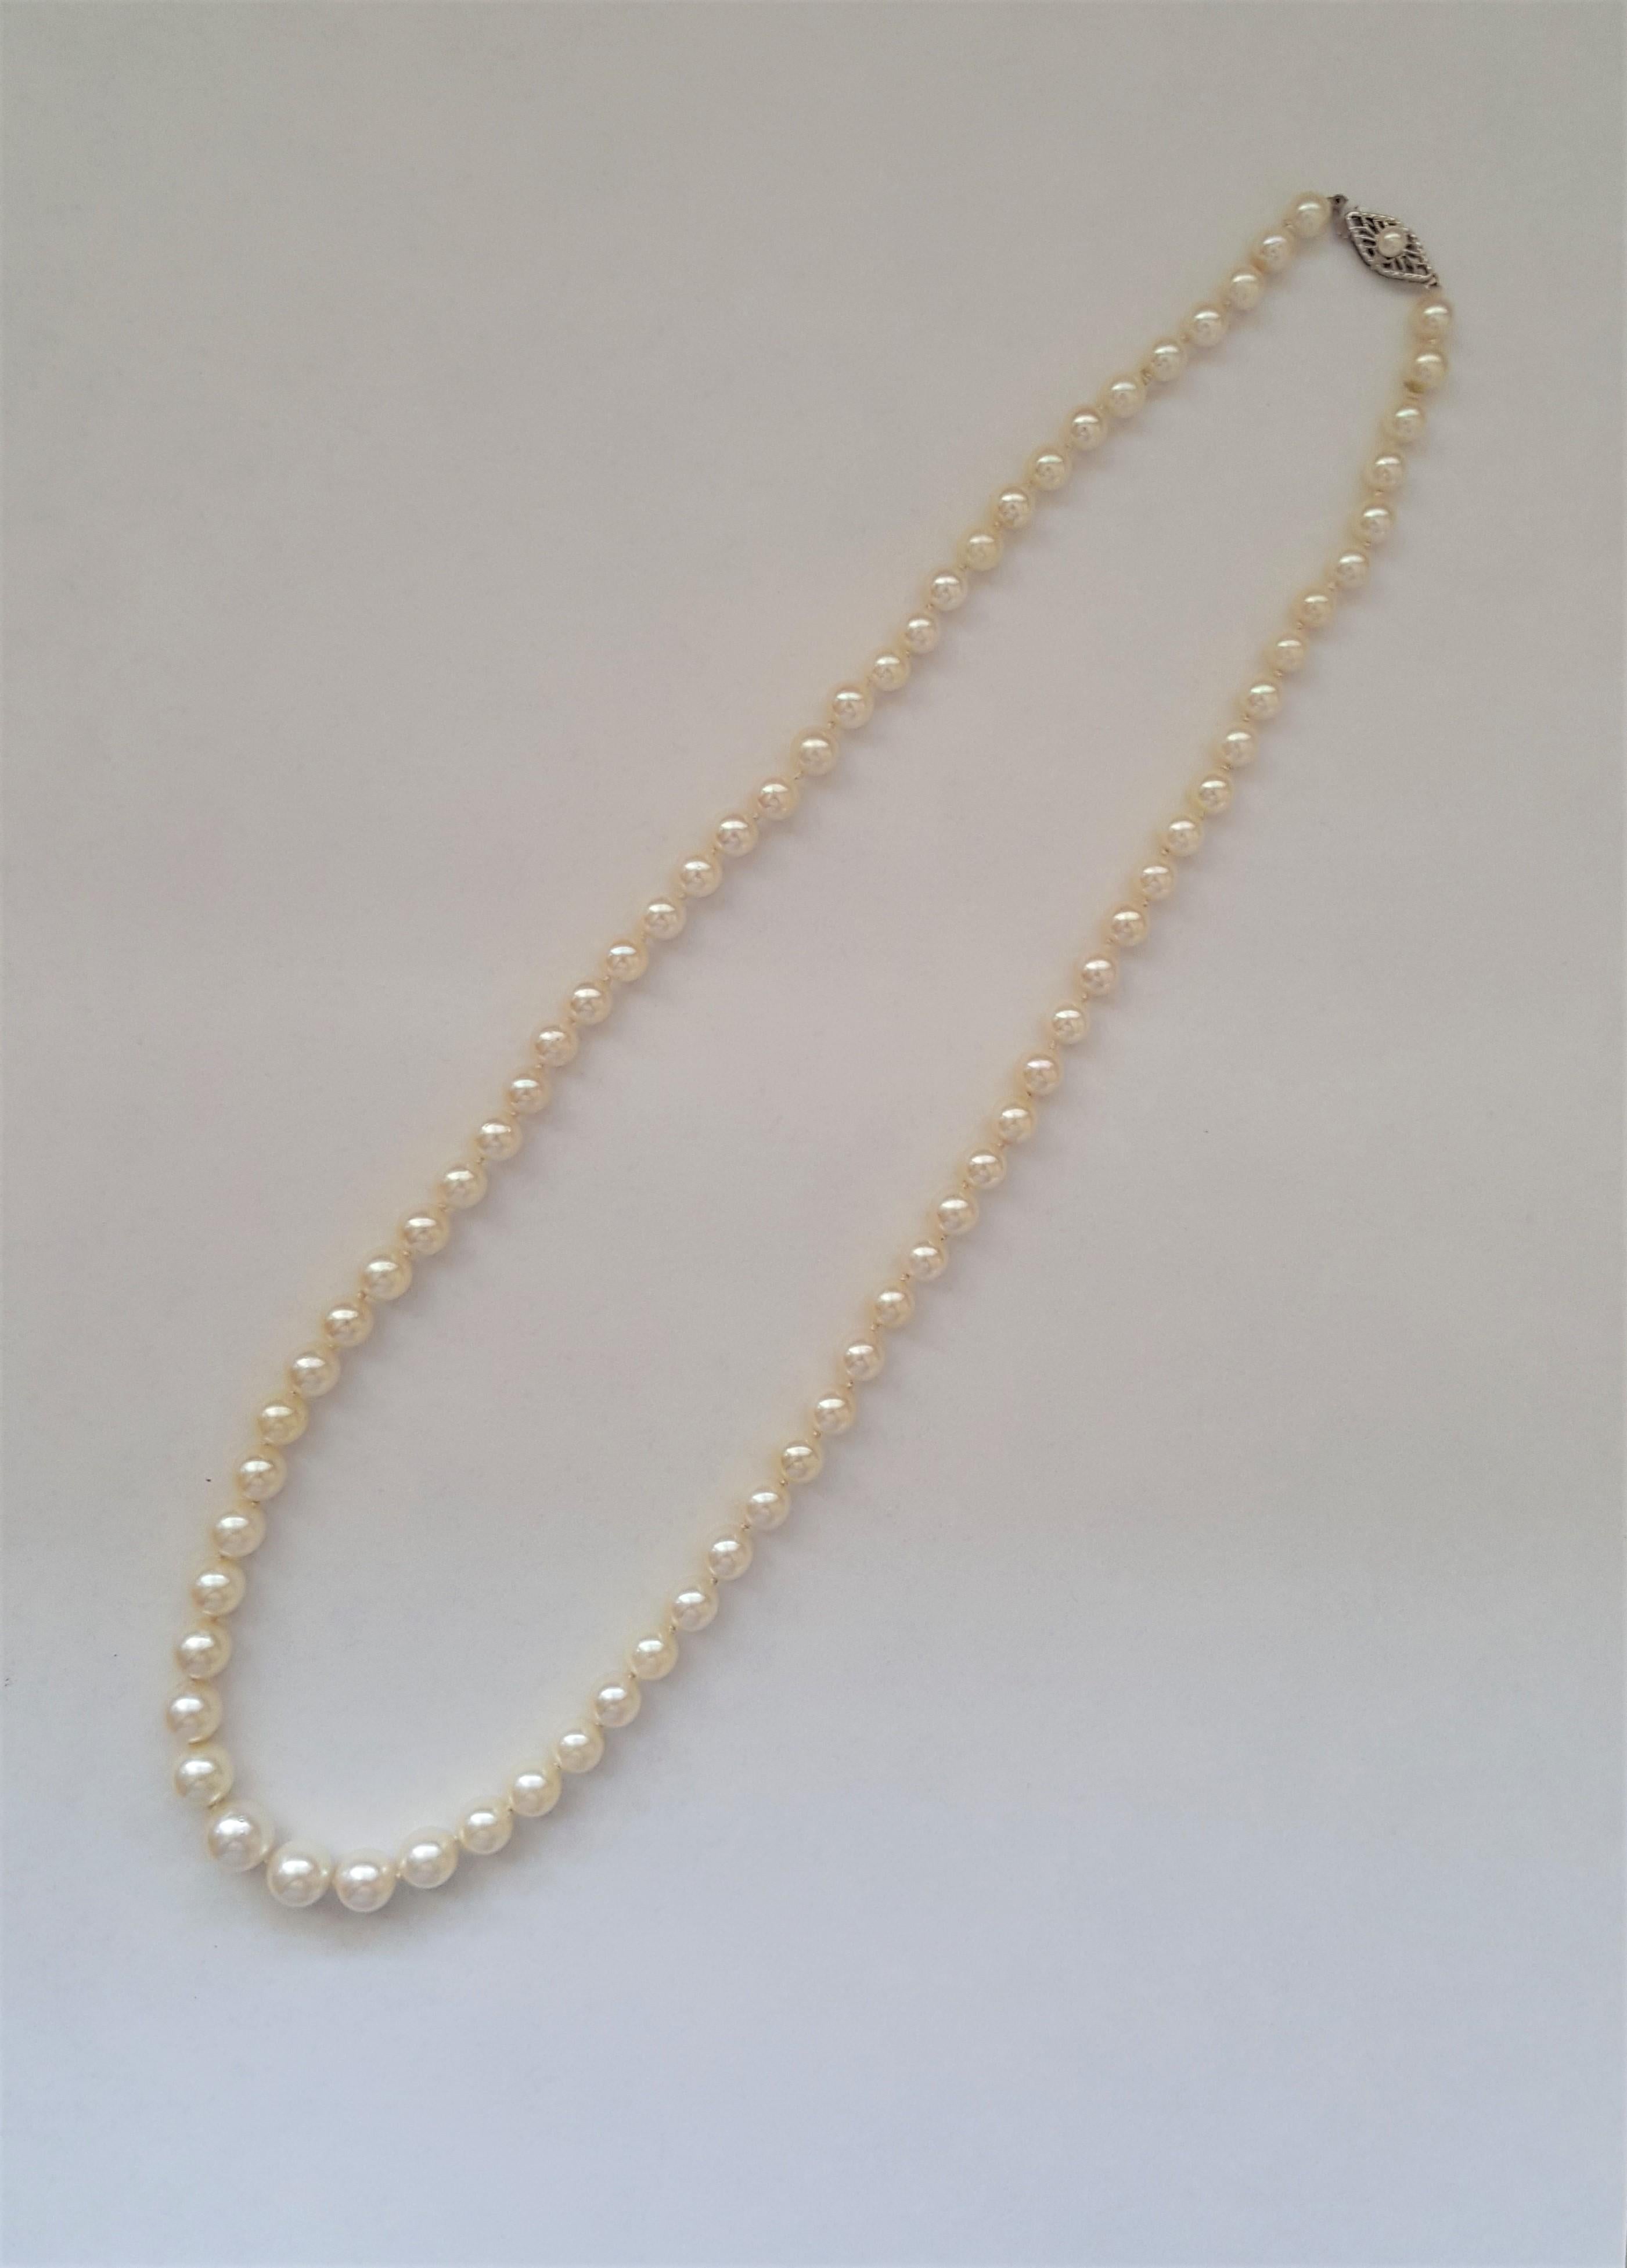 Un magnifique collier de 20 pouces de perles blanc crème de qualité AA dont la taille varie de 4,5 mm à 8,5 mm. Les perles sont en très bon état, avec une nacre propre et un lustre riche. Le collier est fixé par un fermoir en or blanc de 14 carats